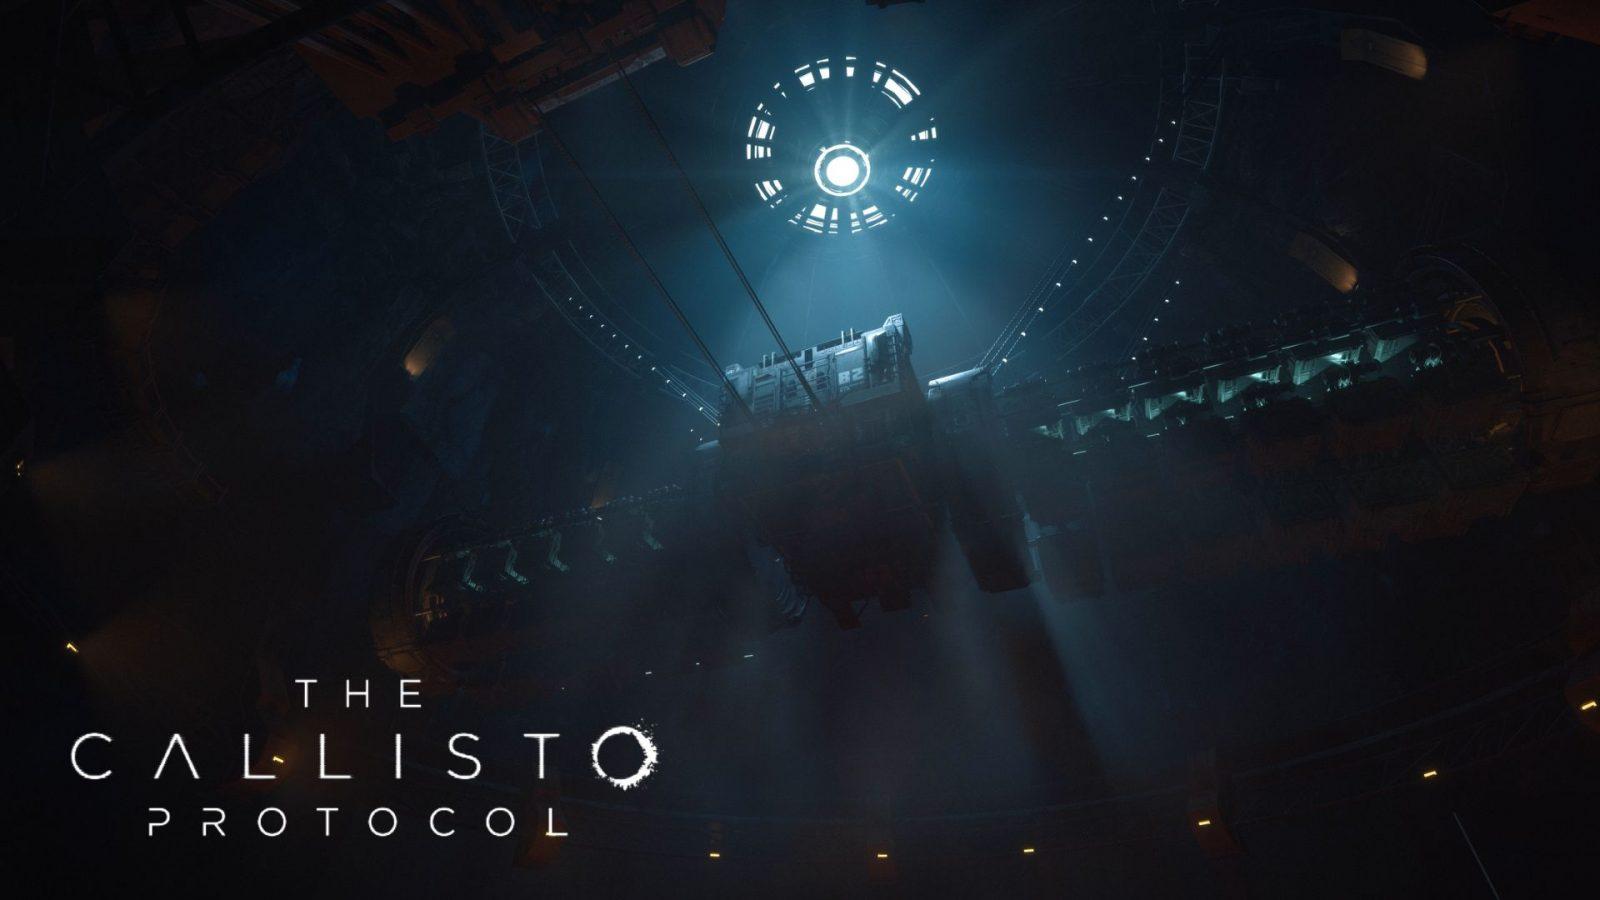 The Callisto Protocol – Lista con los miembros del elenco de voces